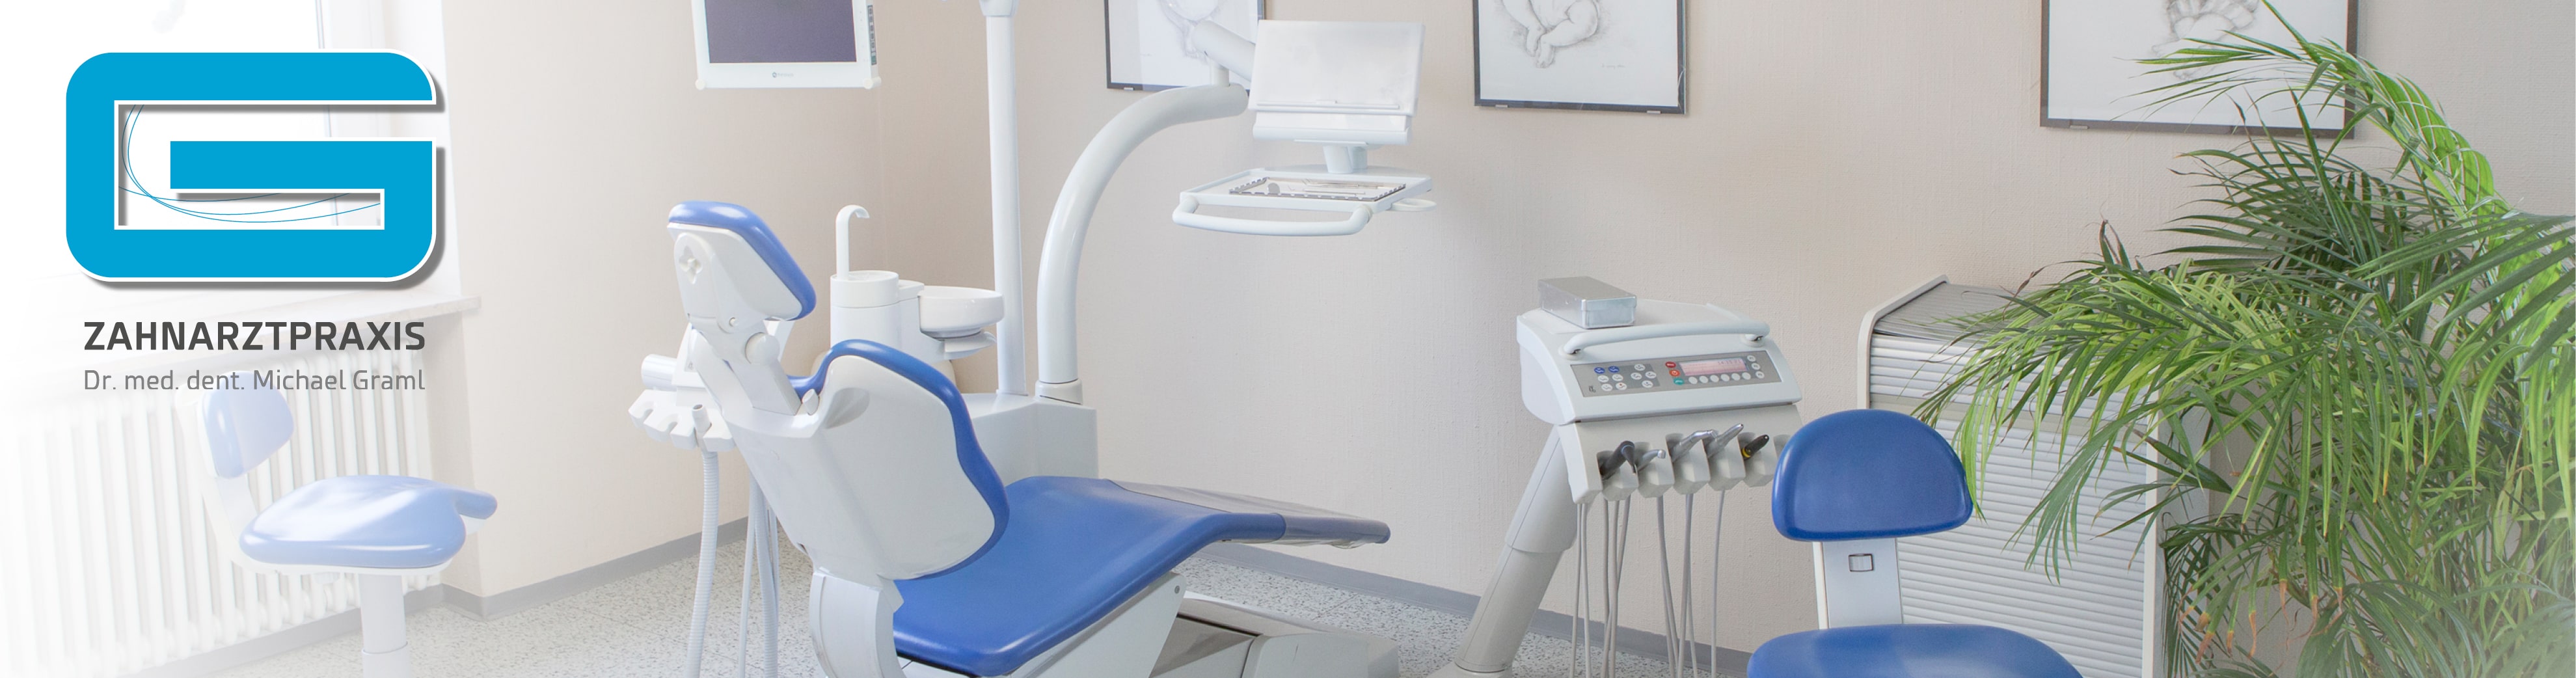 Zahnarztpraxis Graml Behandlungsraum